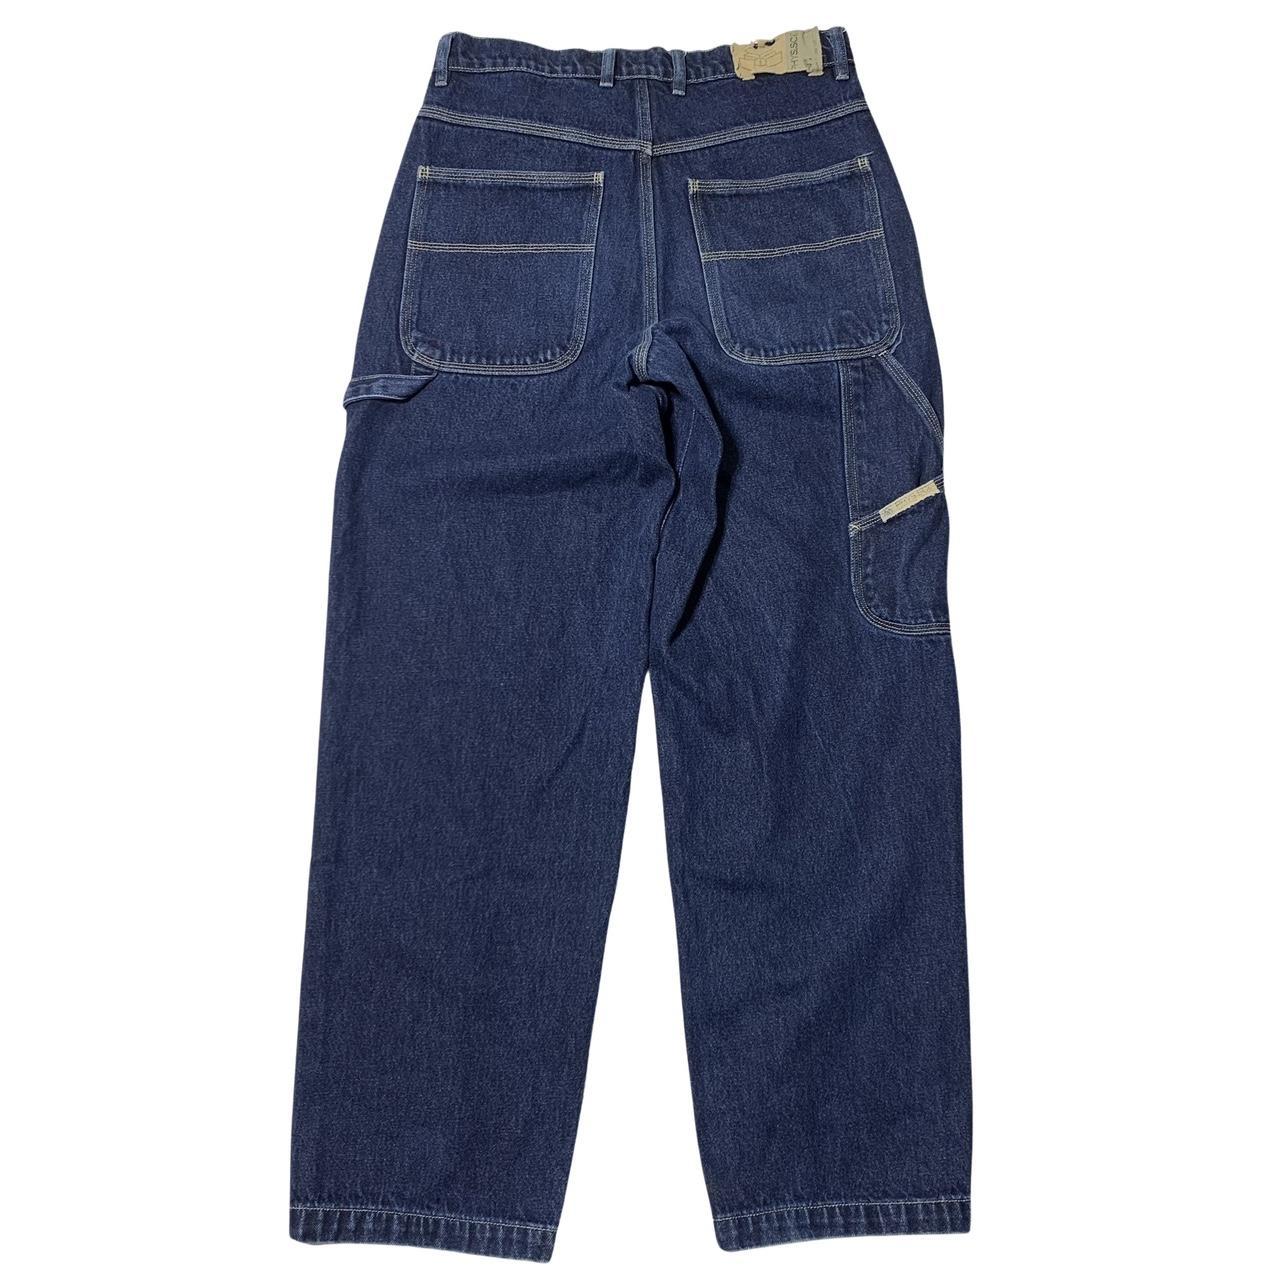 PHYS.SCI Carpenter Jeans Mens Size 32x34 Blue Denim... - Depop